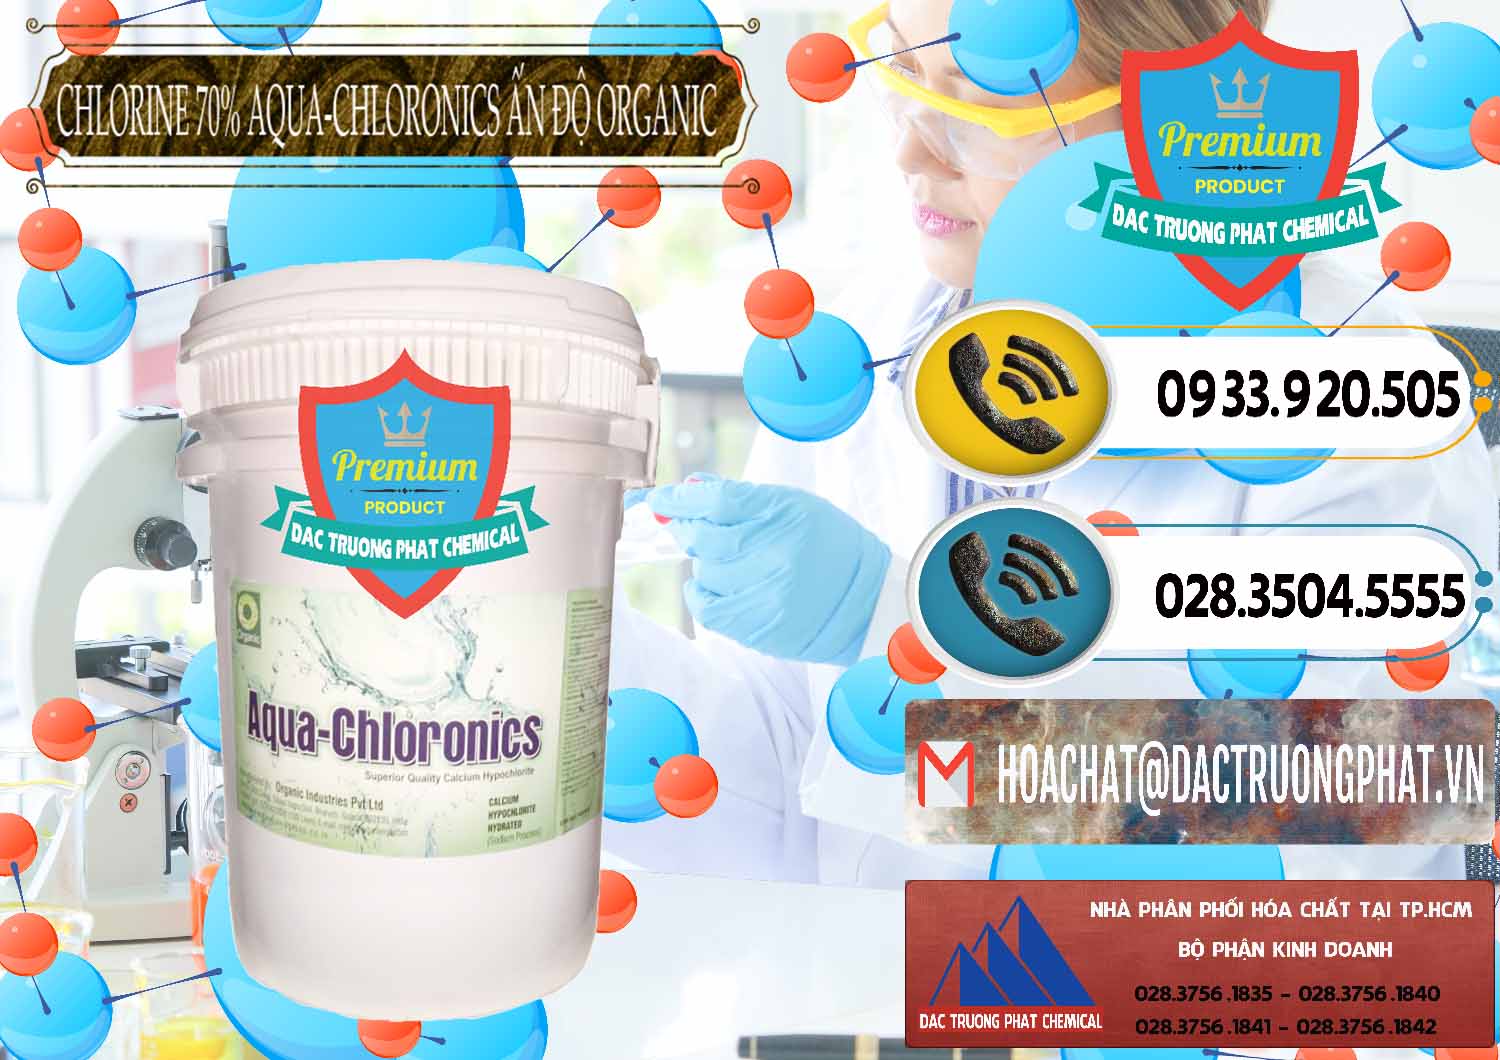 Cty phân phối ( bán ) Chlorine – Clorin 70% Aqua-Chloronics Ấn Độ Organic India - 0211 - Nơi nhập khẩu _ cung cấp hóa chất tại TP.HCM - hoachatdetnhuom.vn